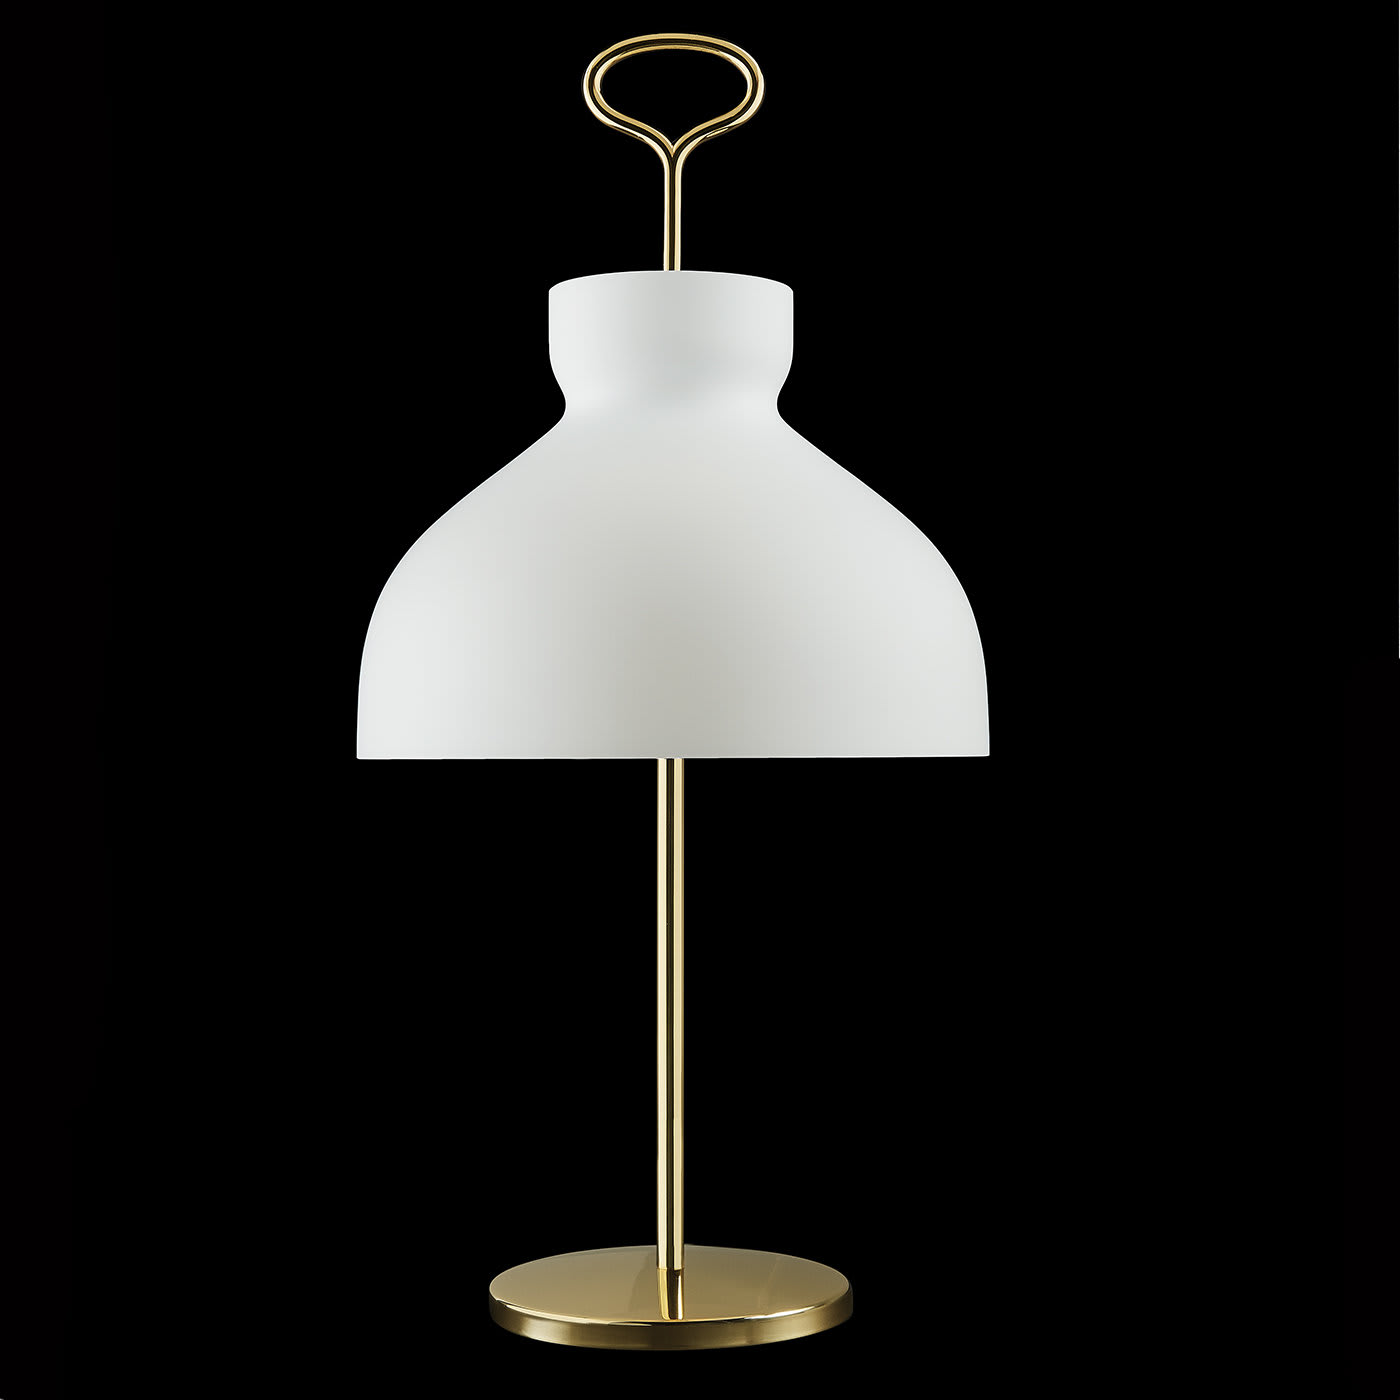 Arenzano Table Lamp by Ignazio Gardella - Tato